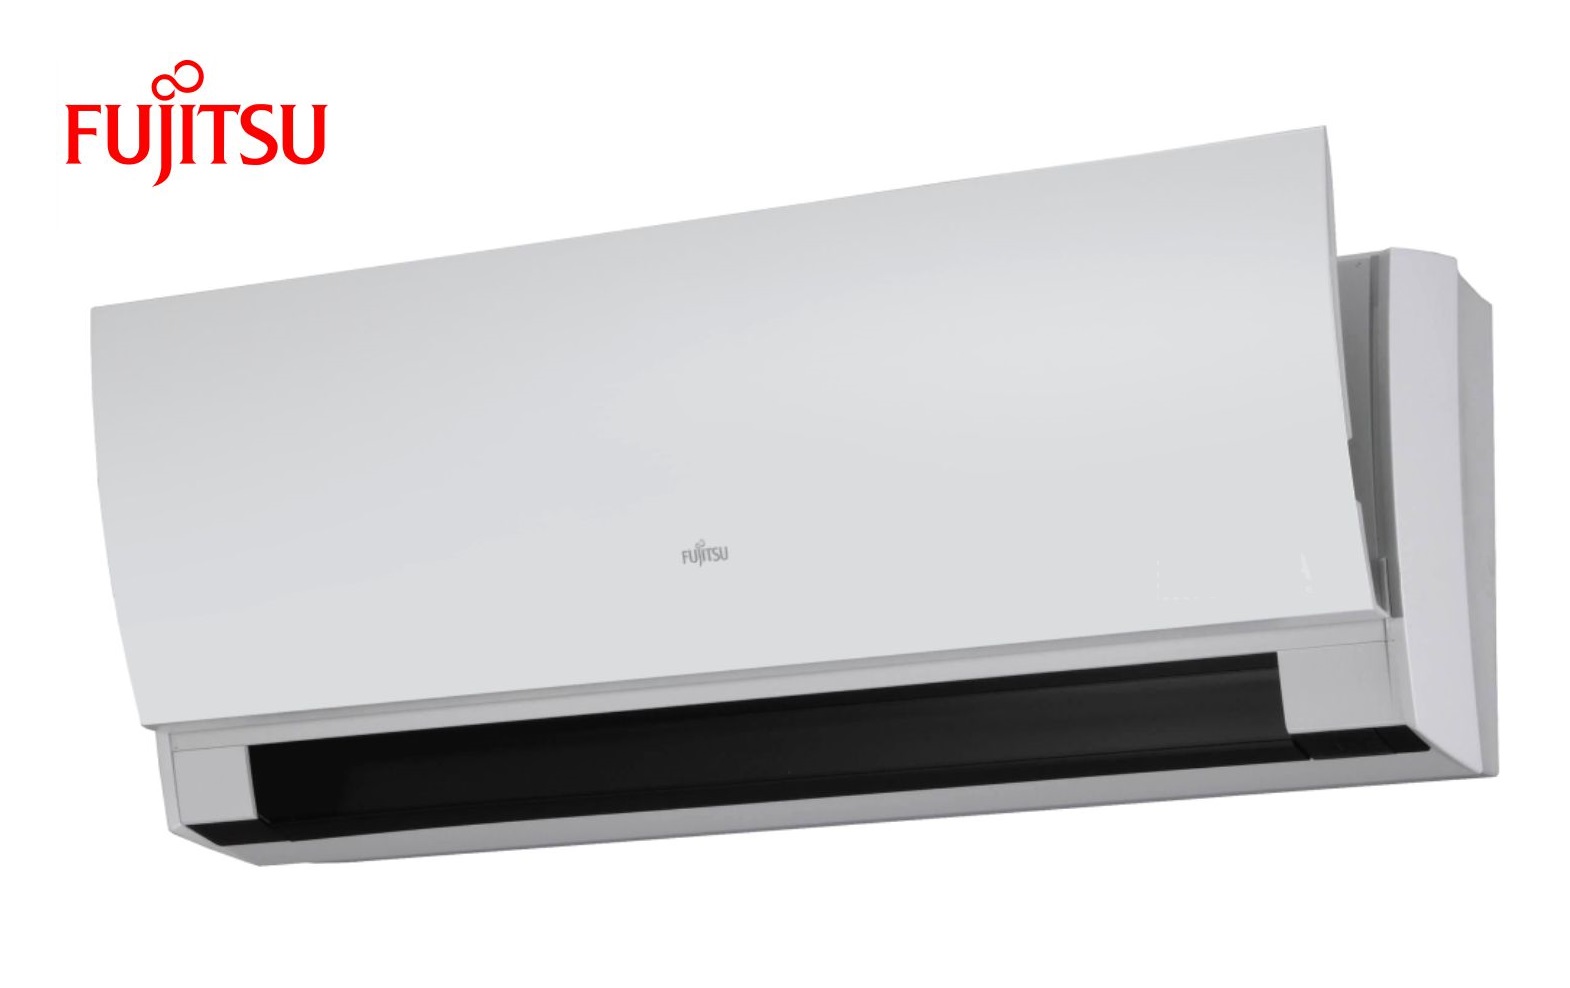 Fujitsu klima uređaj zidni inverter ASYG14LUCA / AOYG14LUCA